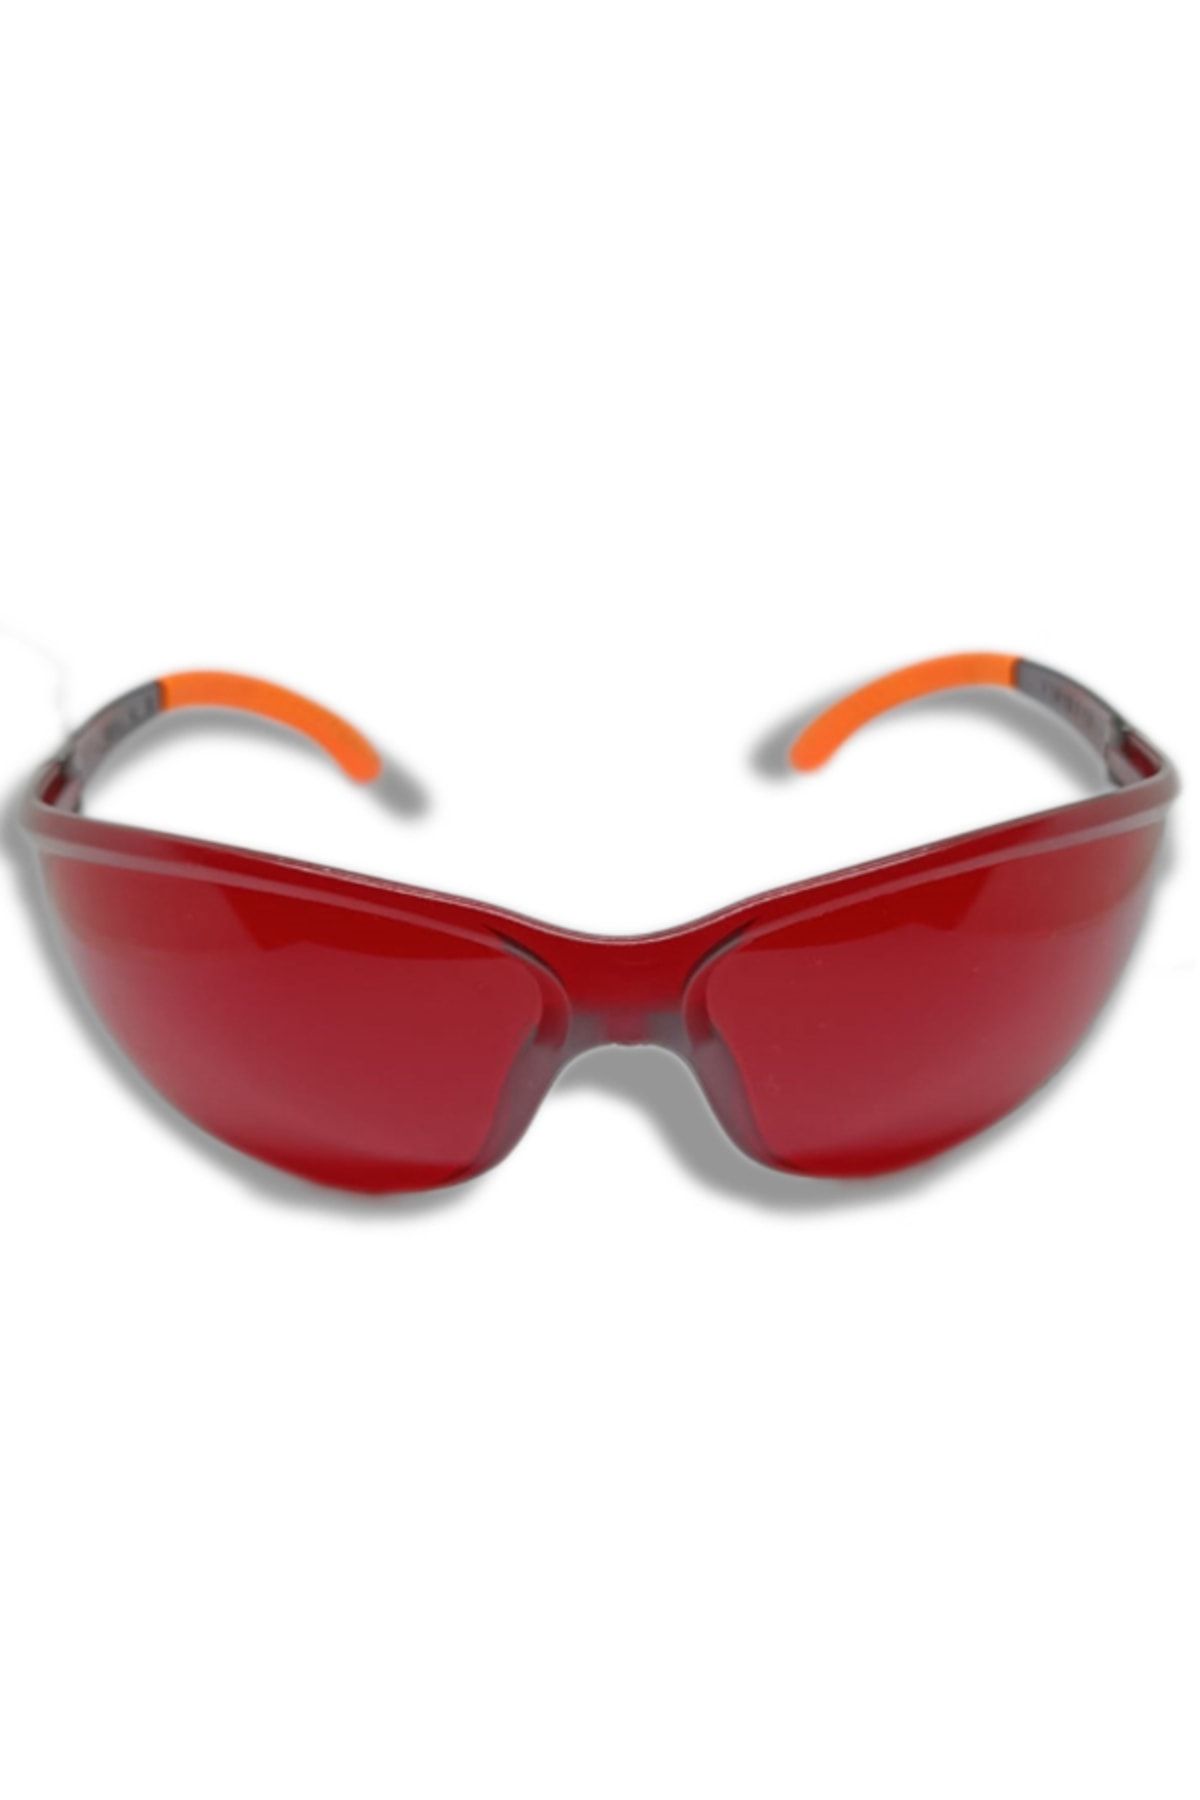 ARMONİKONYA Sport Kırmızı Ipl Lazer Uygulama Epilasyon Gözlüğü Mavi Işın Koruyucu Gözlük Göz Koruyucu Lazer